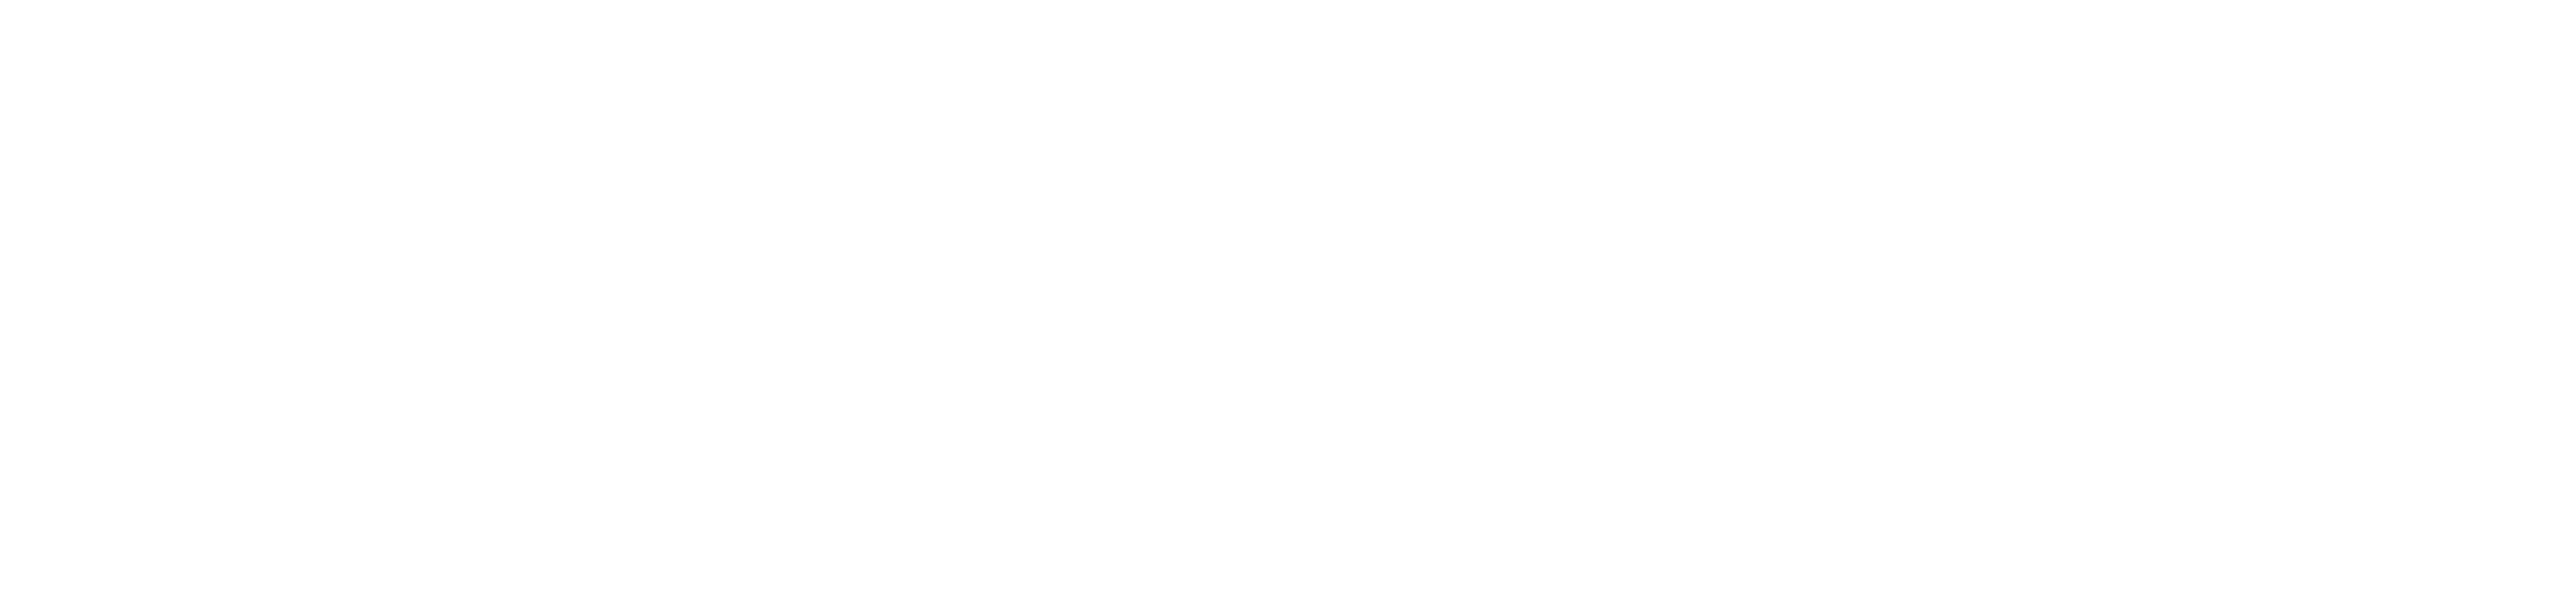 Zoolander 2 logo